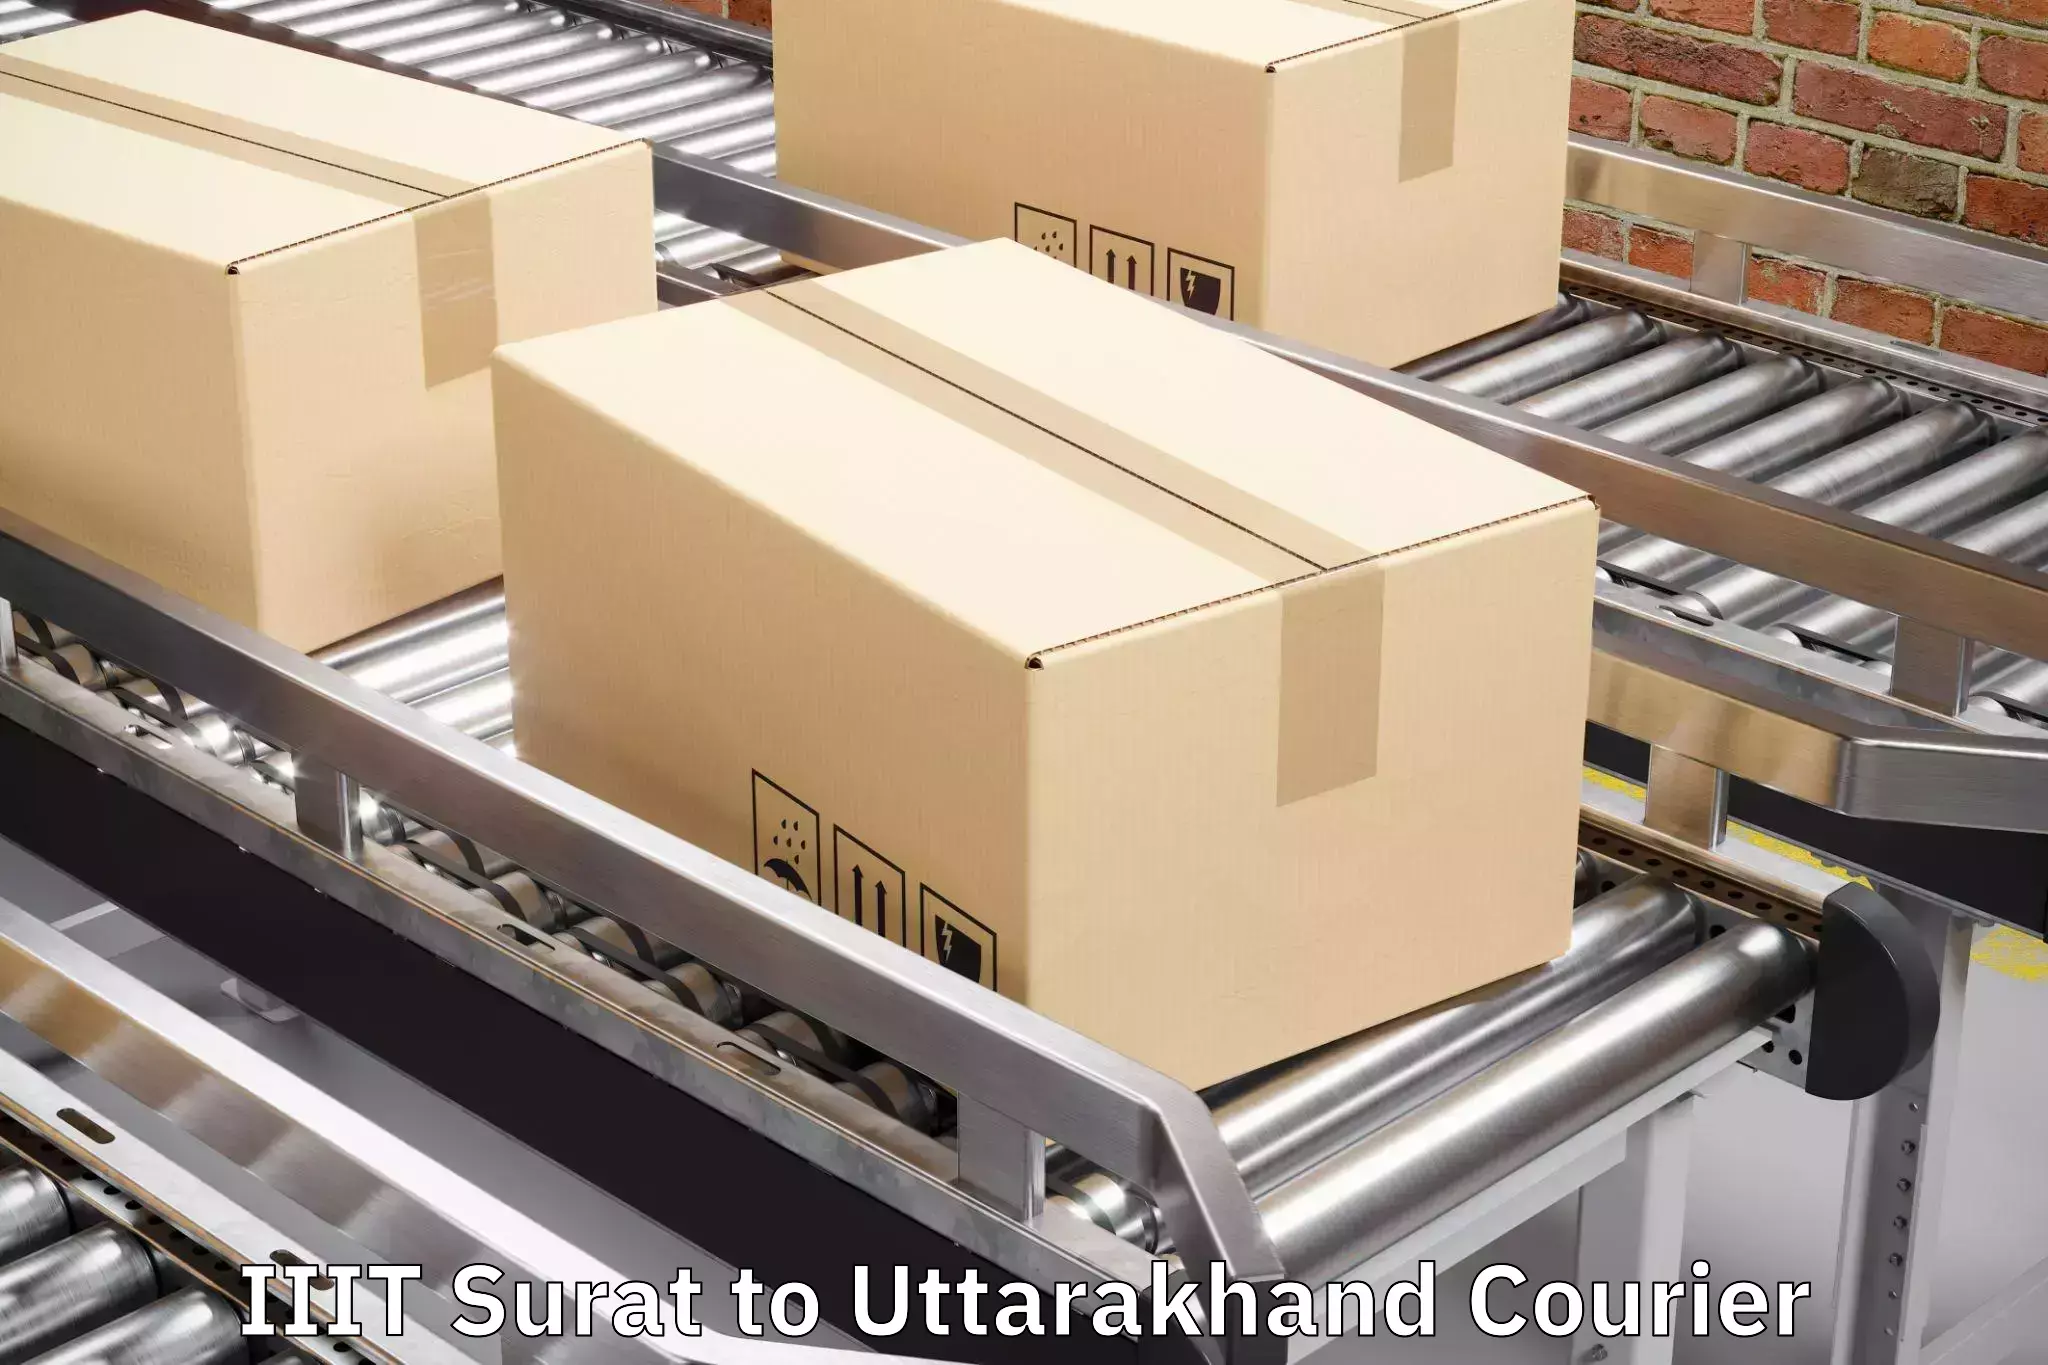 Baggage delivery estimate IIIT Surat to IIT Roorkee